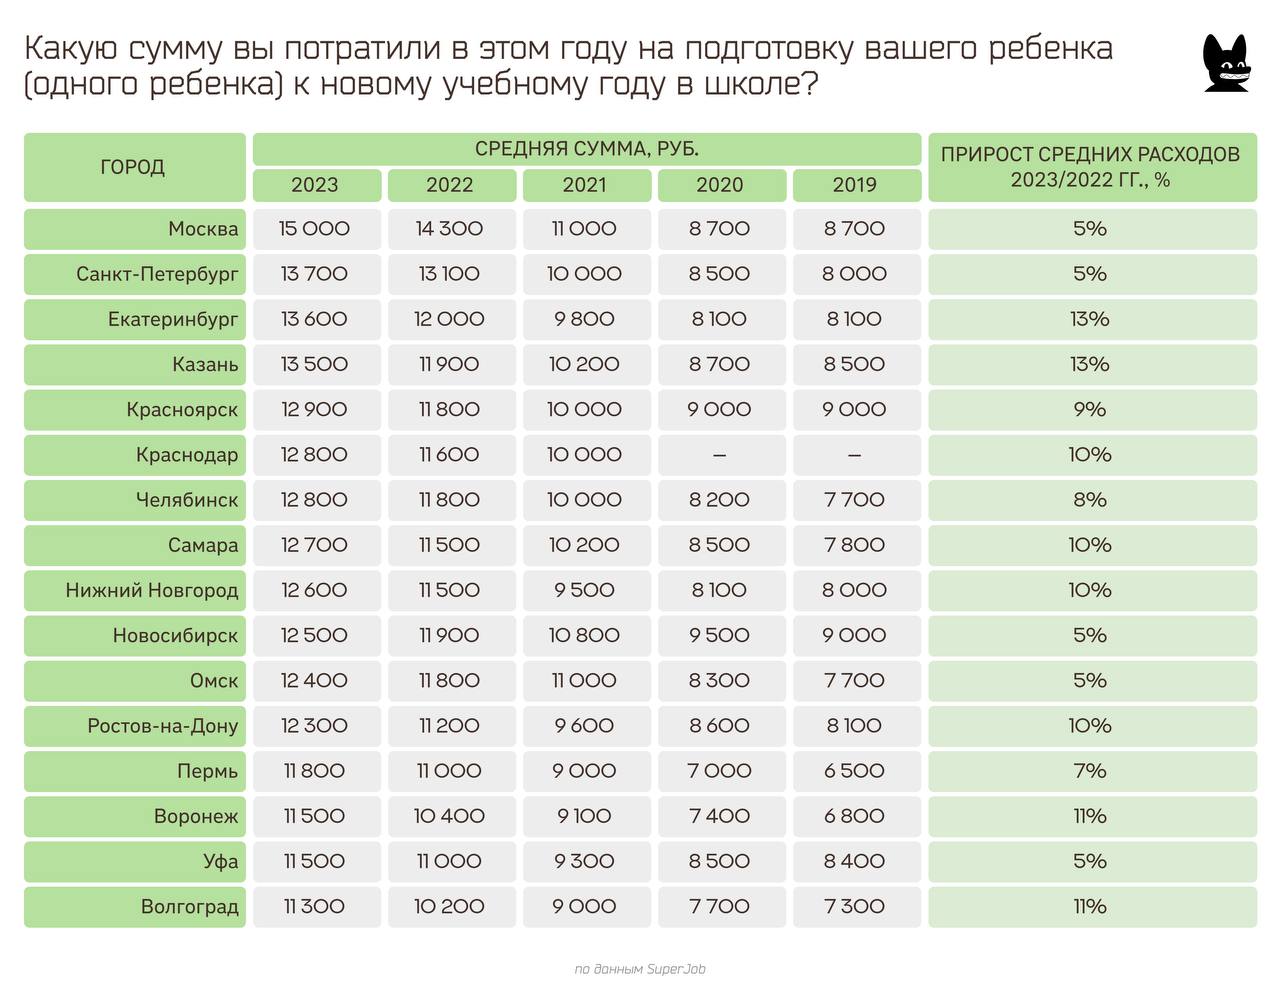 В Екатеринбурге расходы на подготовку ребенка к школе выросли на 13%